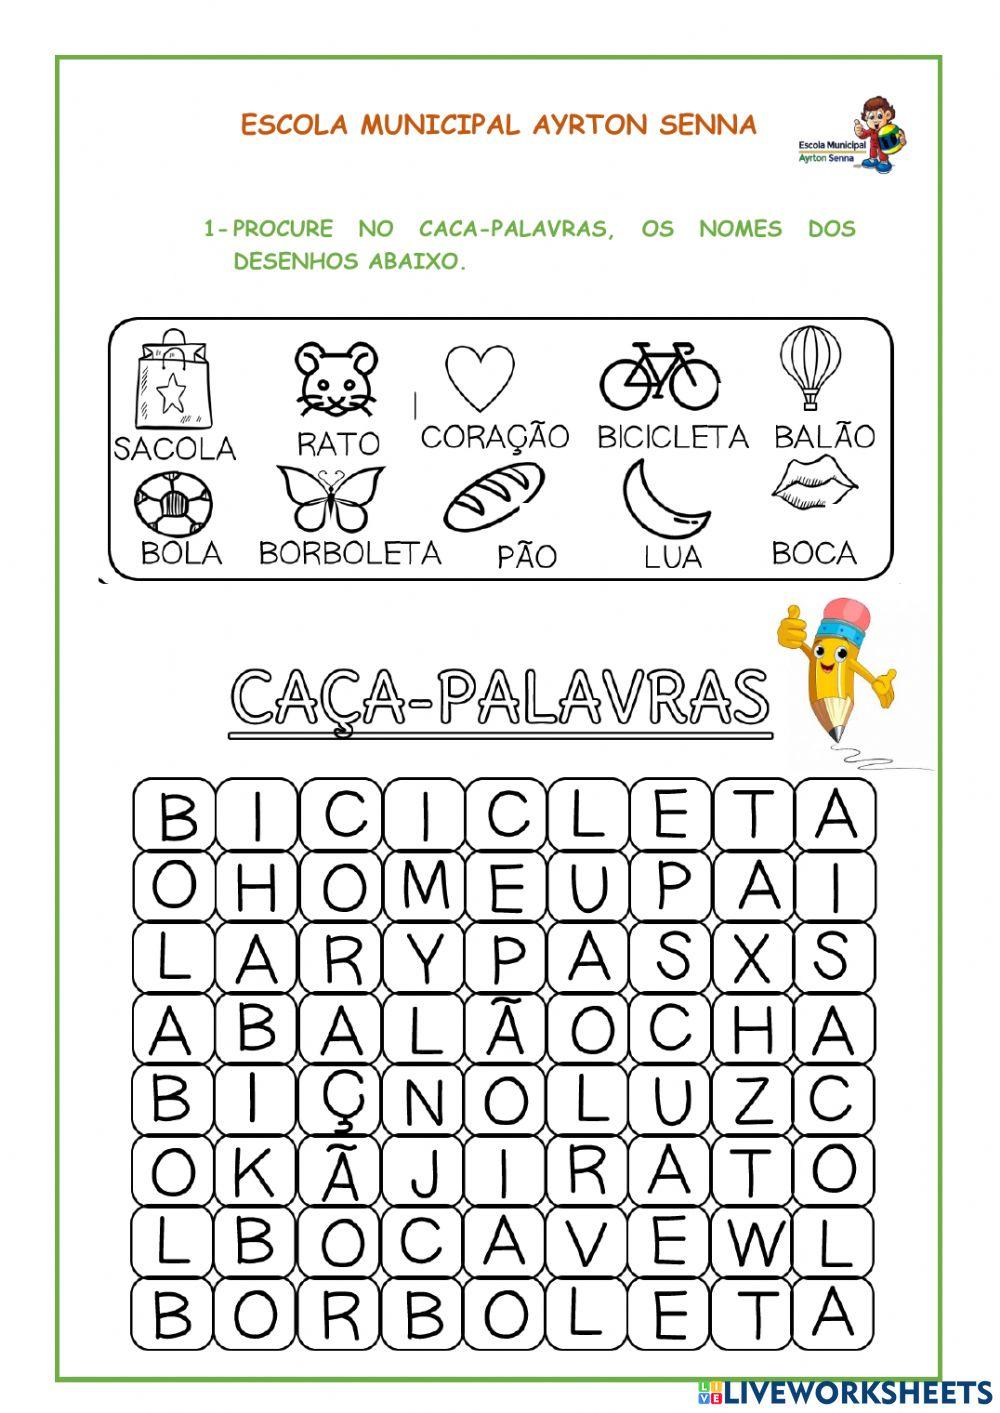 Caça Palavras online exercise for